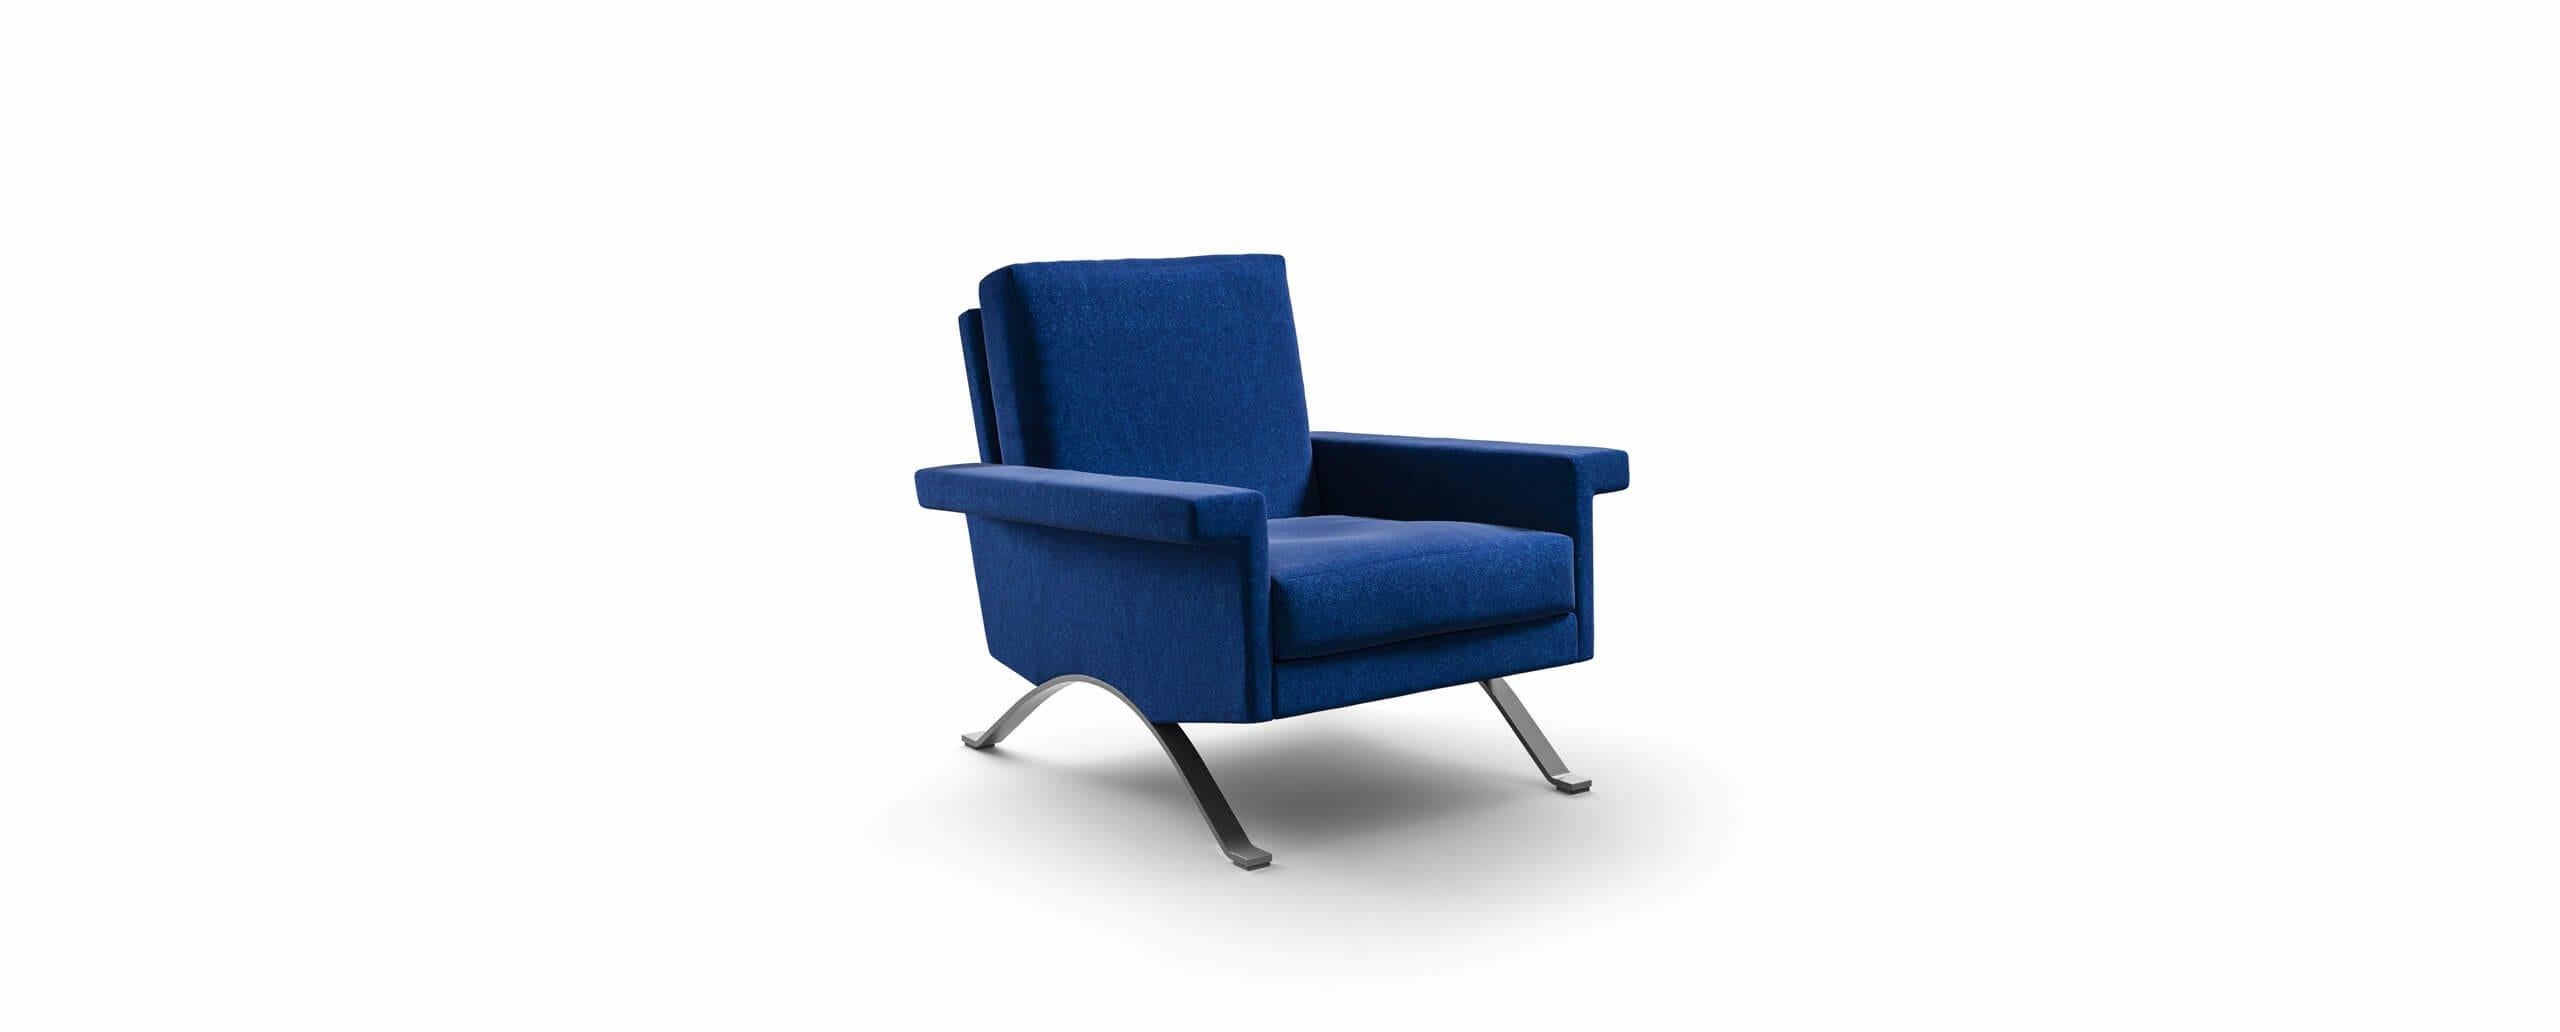 1960 von Ico Parisi entworfener Sessel, der 2020 neu aufgelegt wird.
Hergestellt von Cassina in Italien.

Der von Ico Parisi 1960 für Cassina, damals noch 